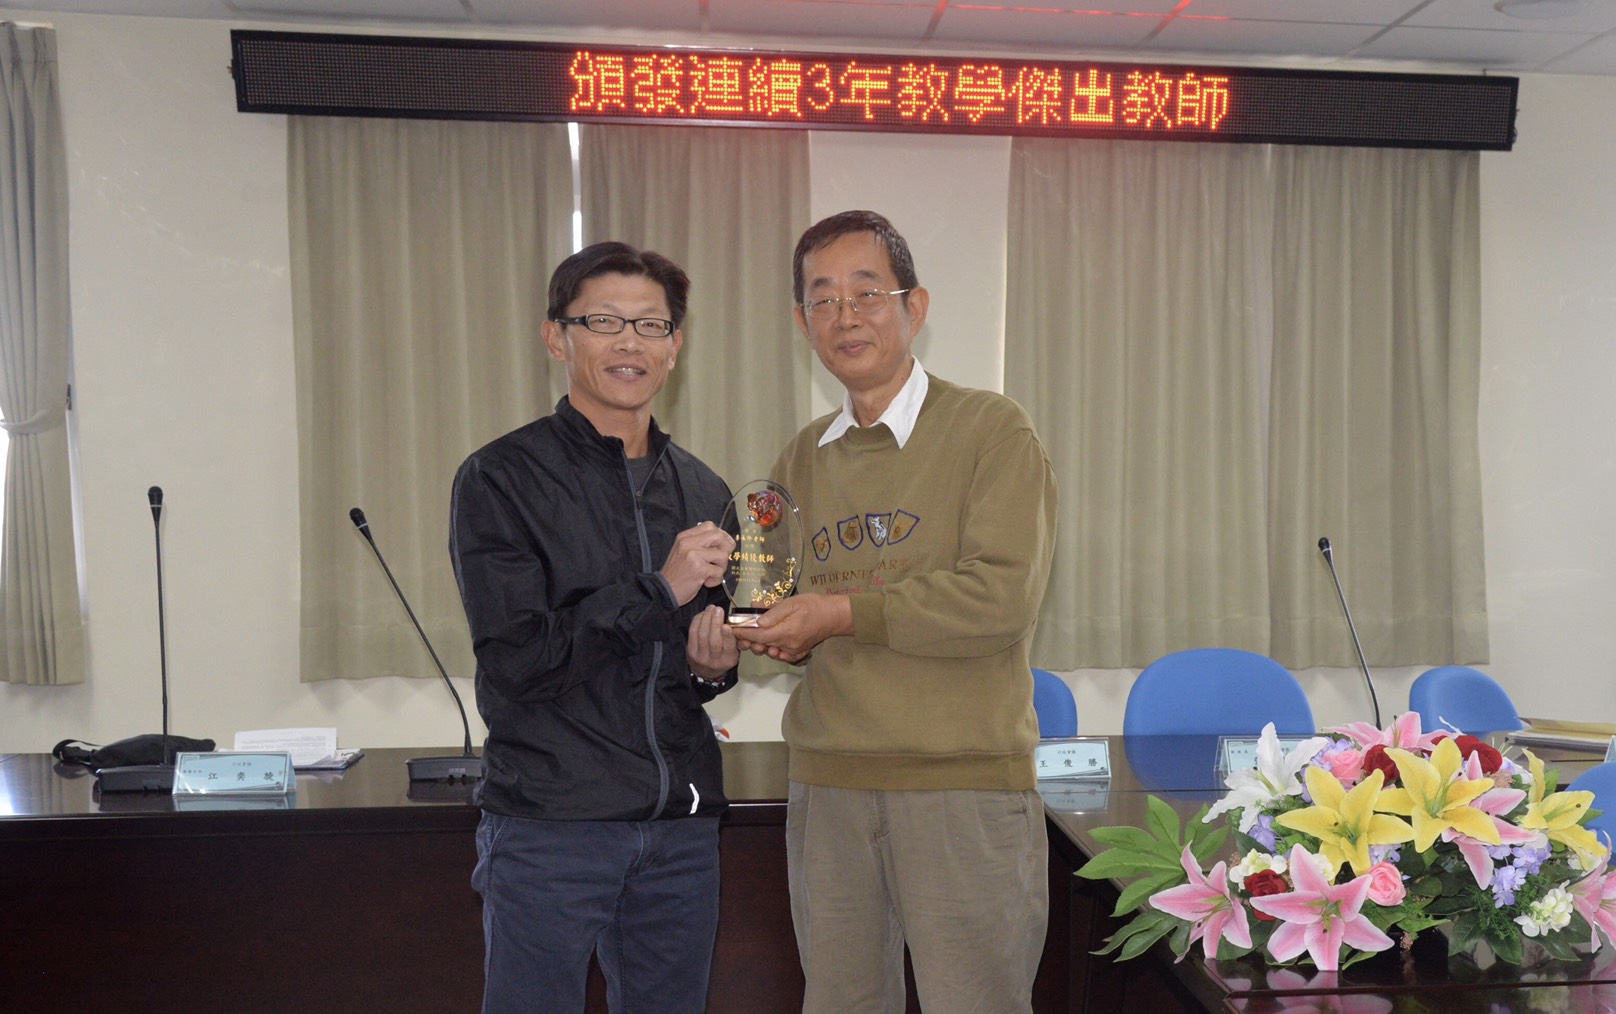 李承修老師榮獲108學年度教學績優教師獎